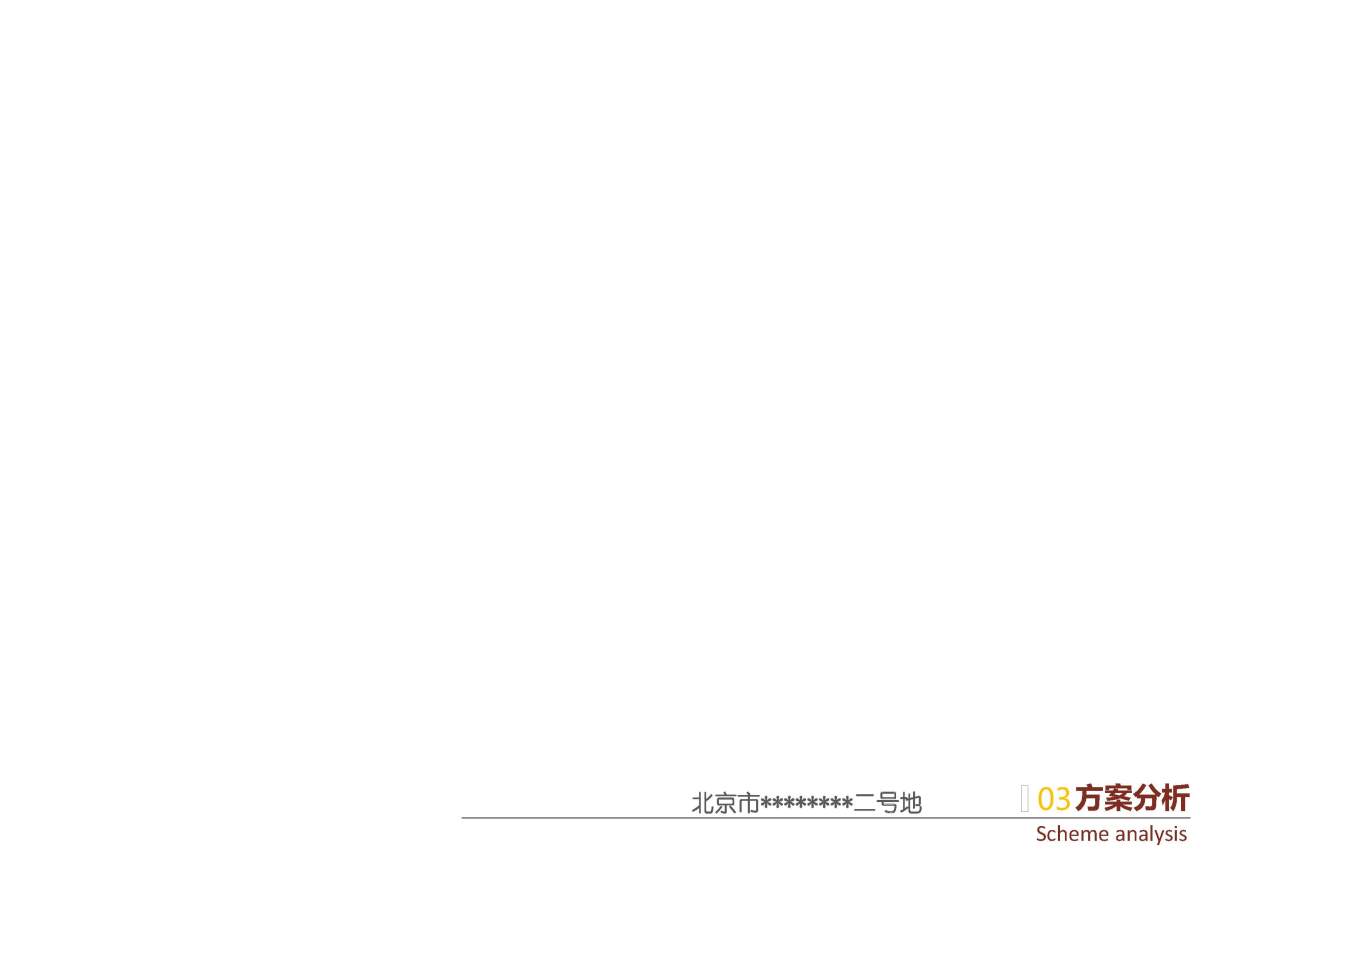 北京市大興區*****二號地夜景照明項目案例圖26